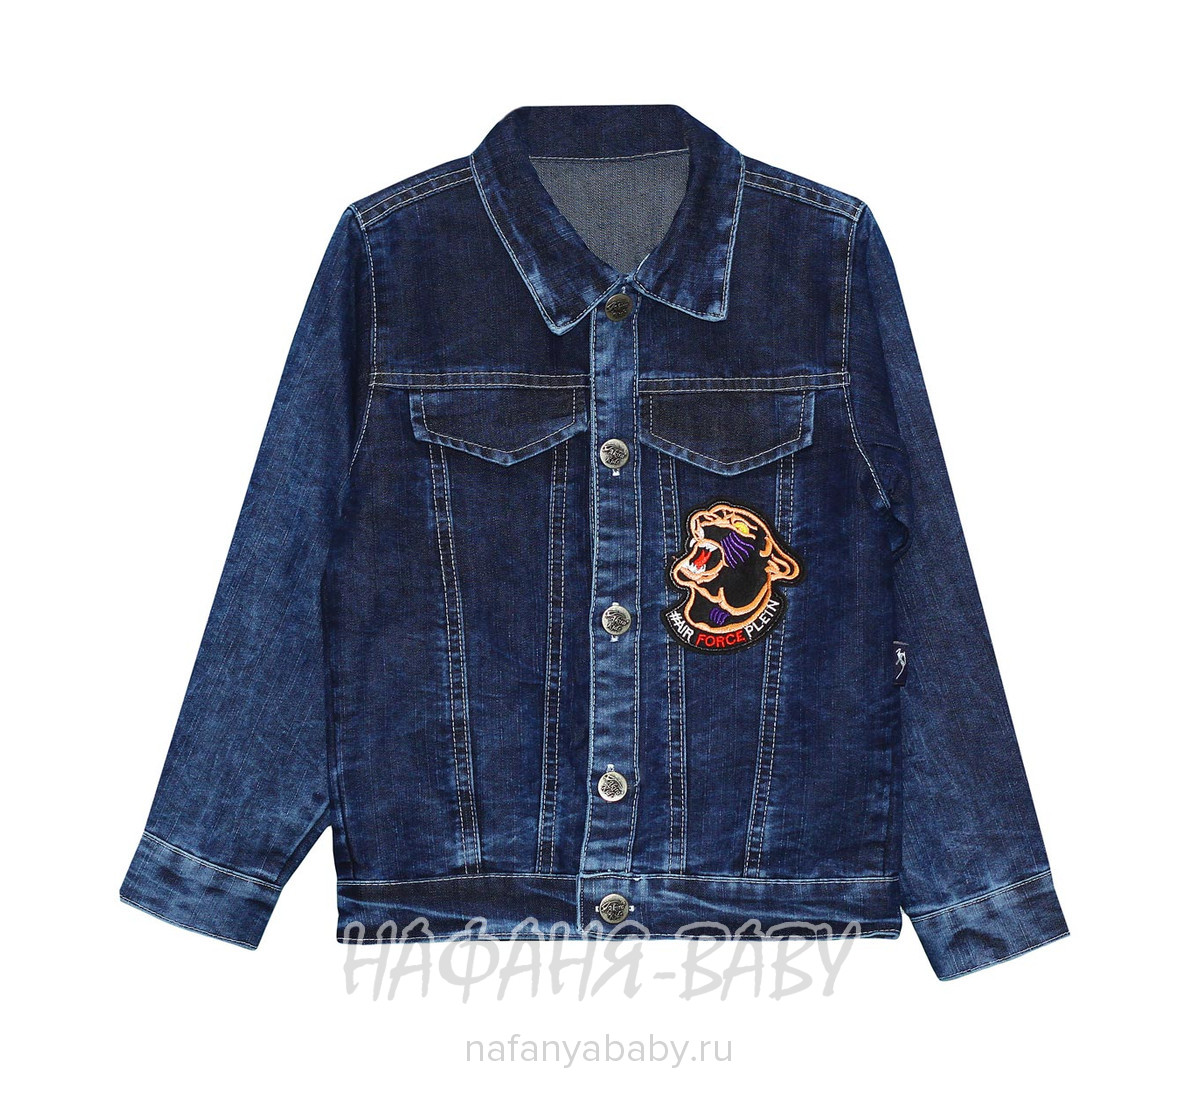 Детская джинсовая куртка AKIRA, купить в интернет магазине Нафаня. арт: 1959.